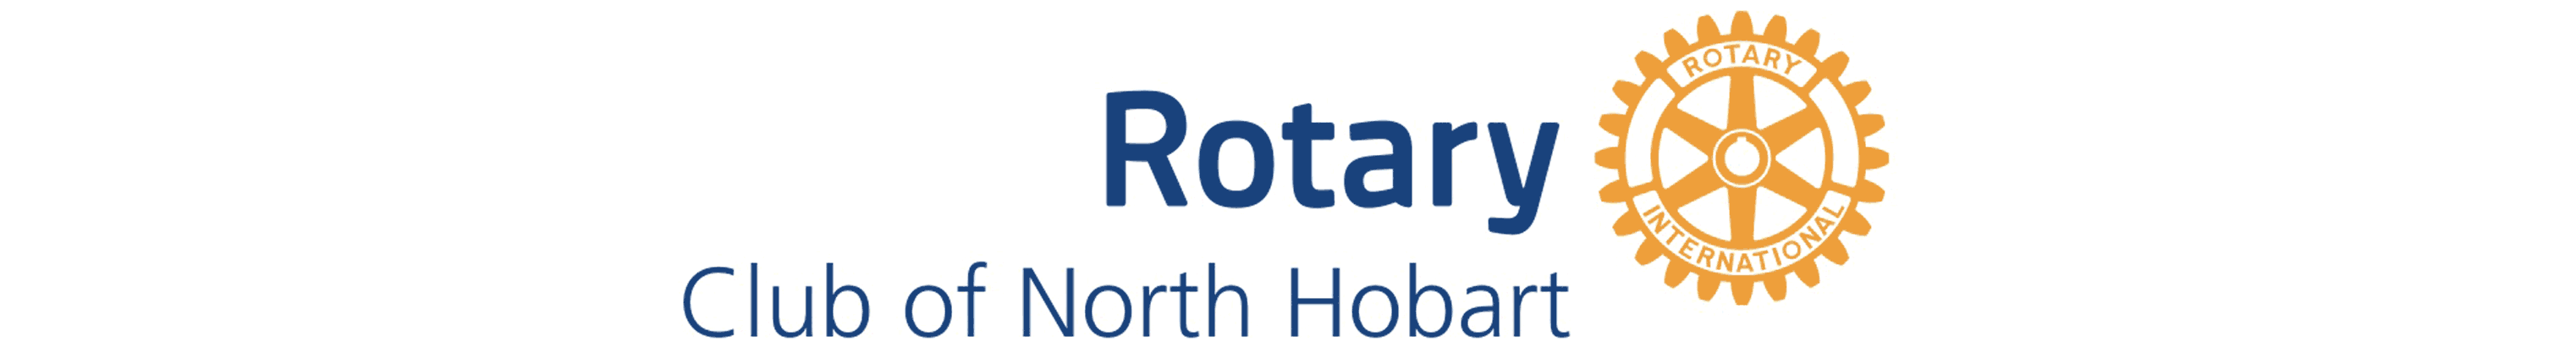 Rotary Club of North Hobart